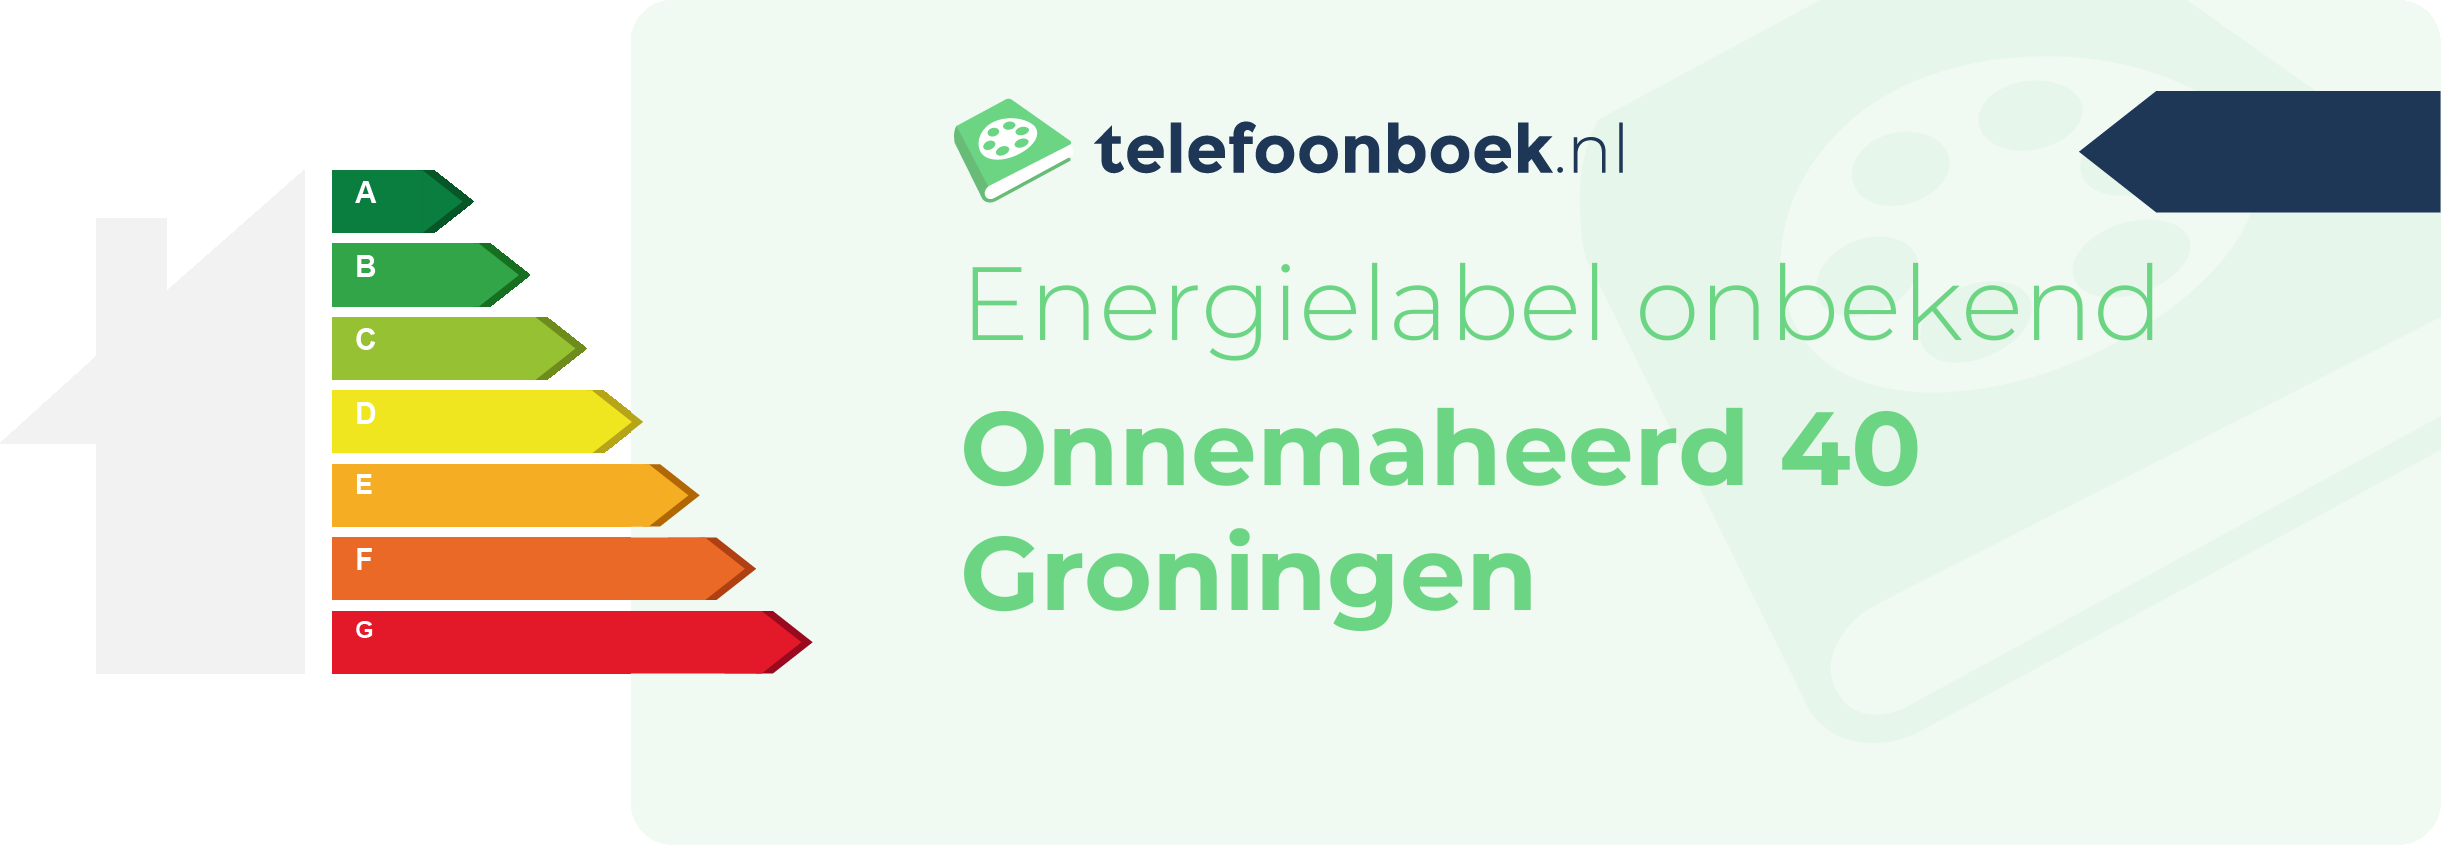 Energielabel Onnemaheerd 40 Groningen